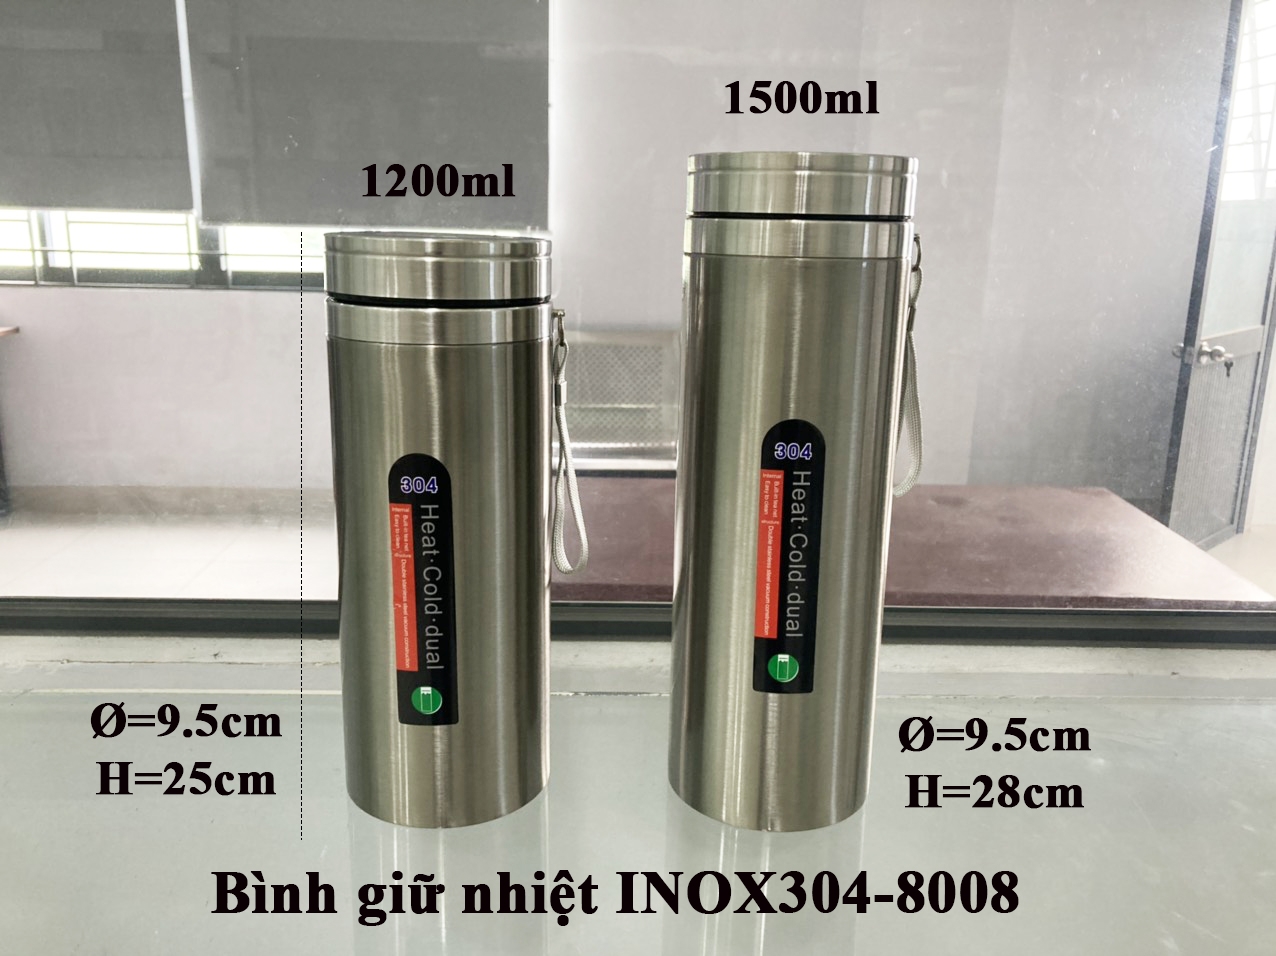 Bình giữ nhiệt INOX304-8008